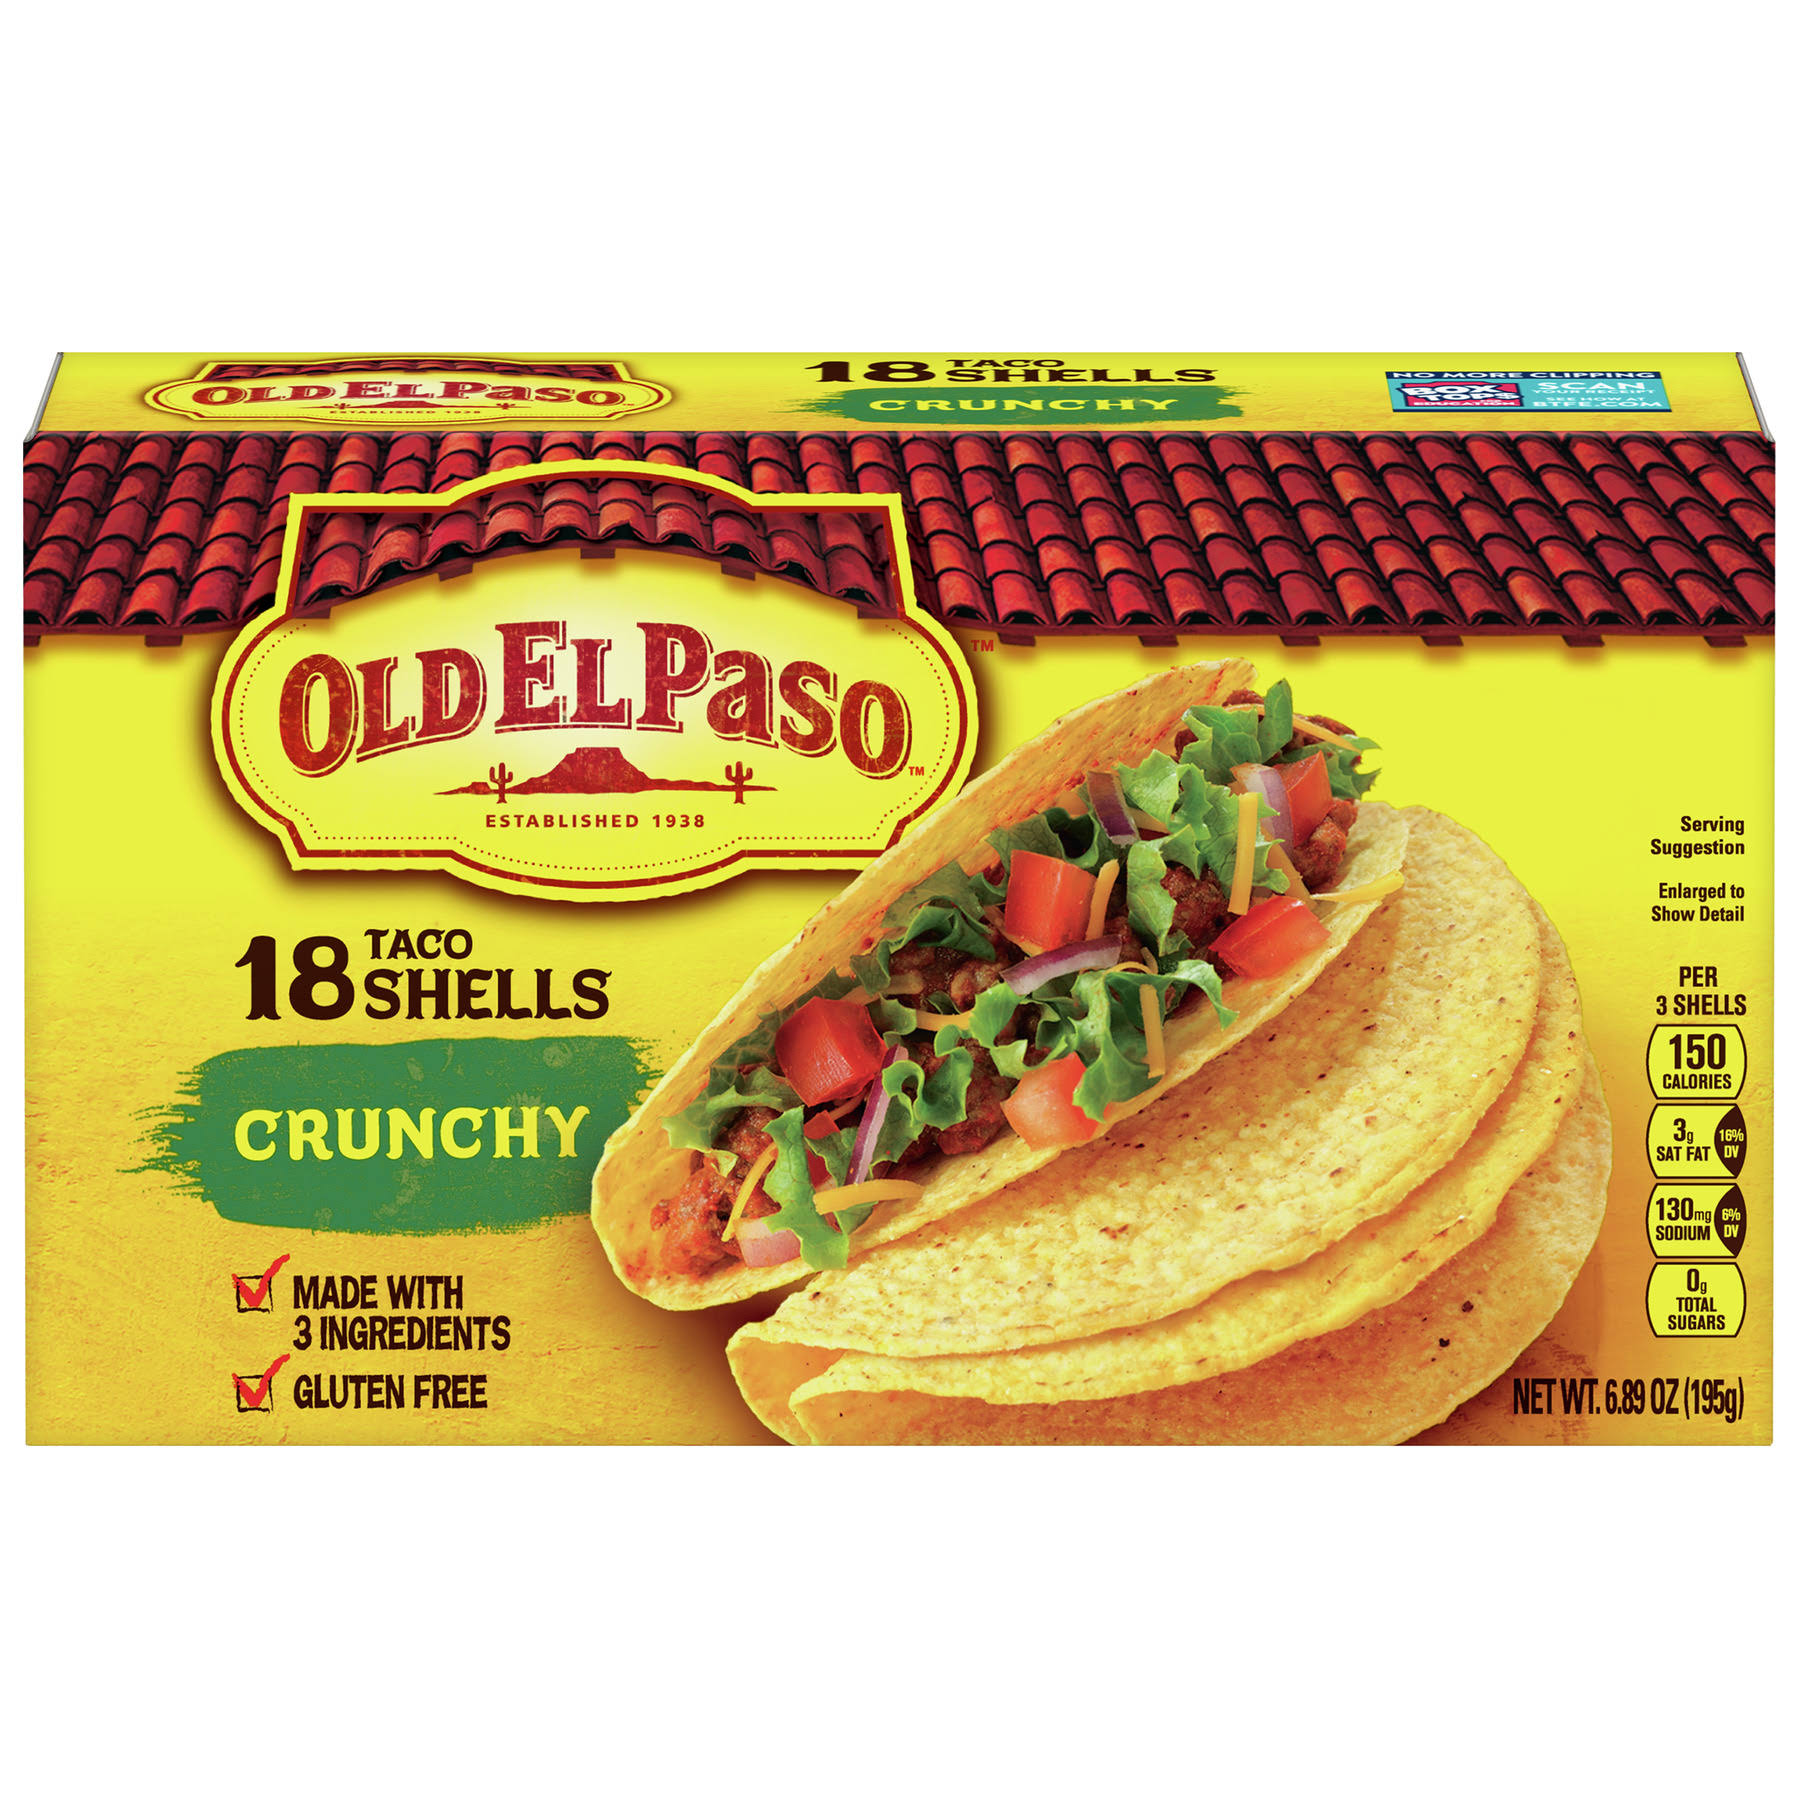 Old El Paso Crunchy Taco Shells - 18 count